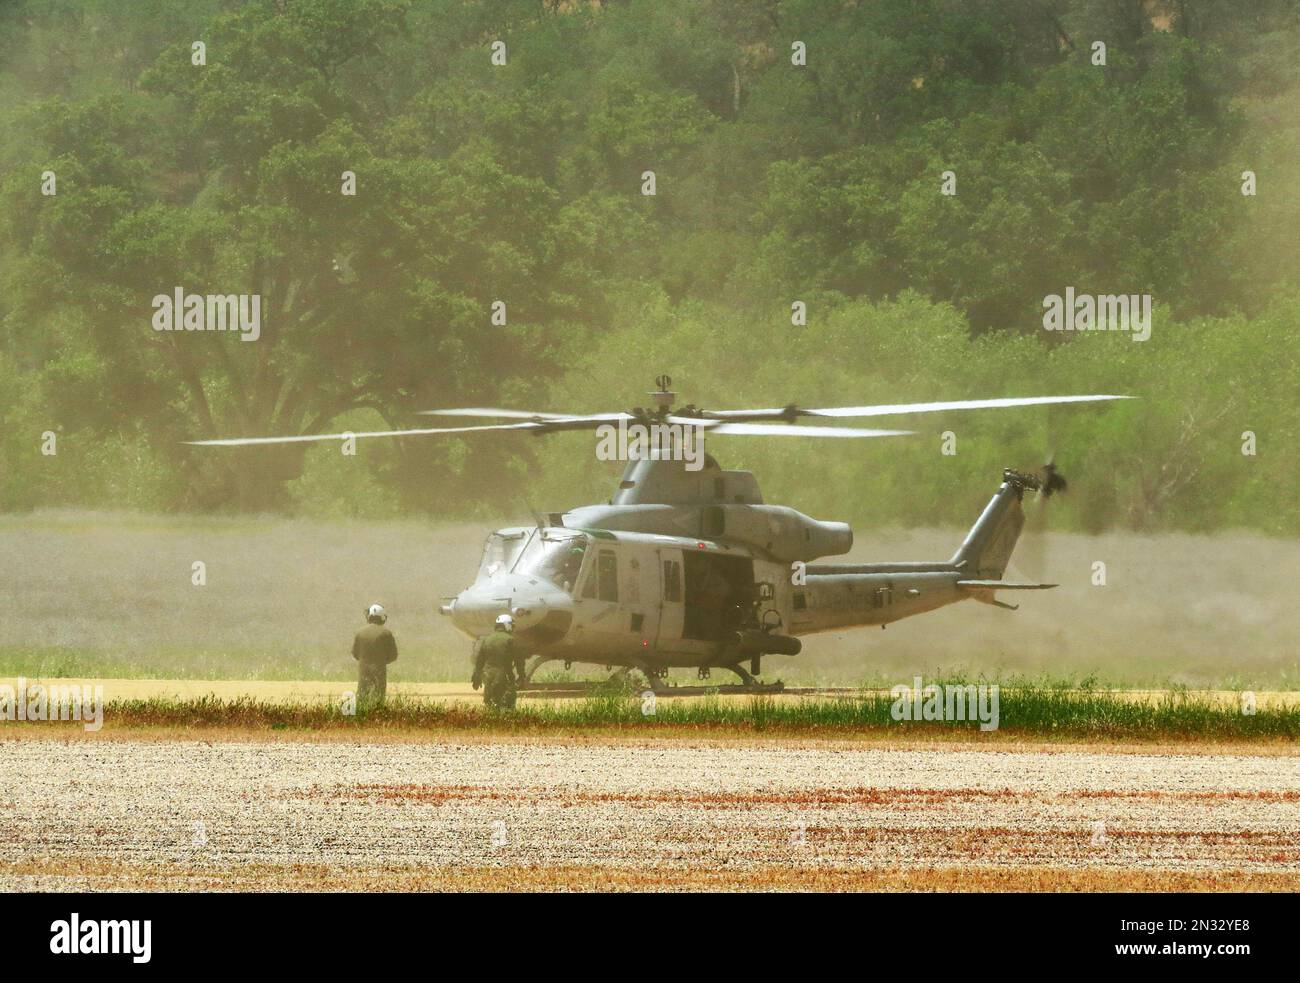 13th Marine Expeditionary Unit crewman ravitailler un hélicoptère d'attaque dans un exercice d'entraînement militaire sur piste d'atterrissage en terre, fort Hunter Liggett, CA. Banque D'Images